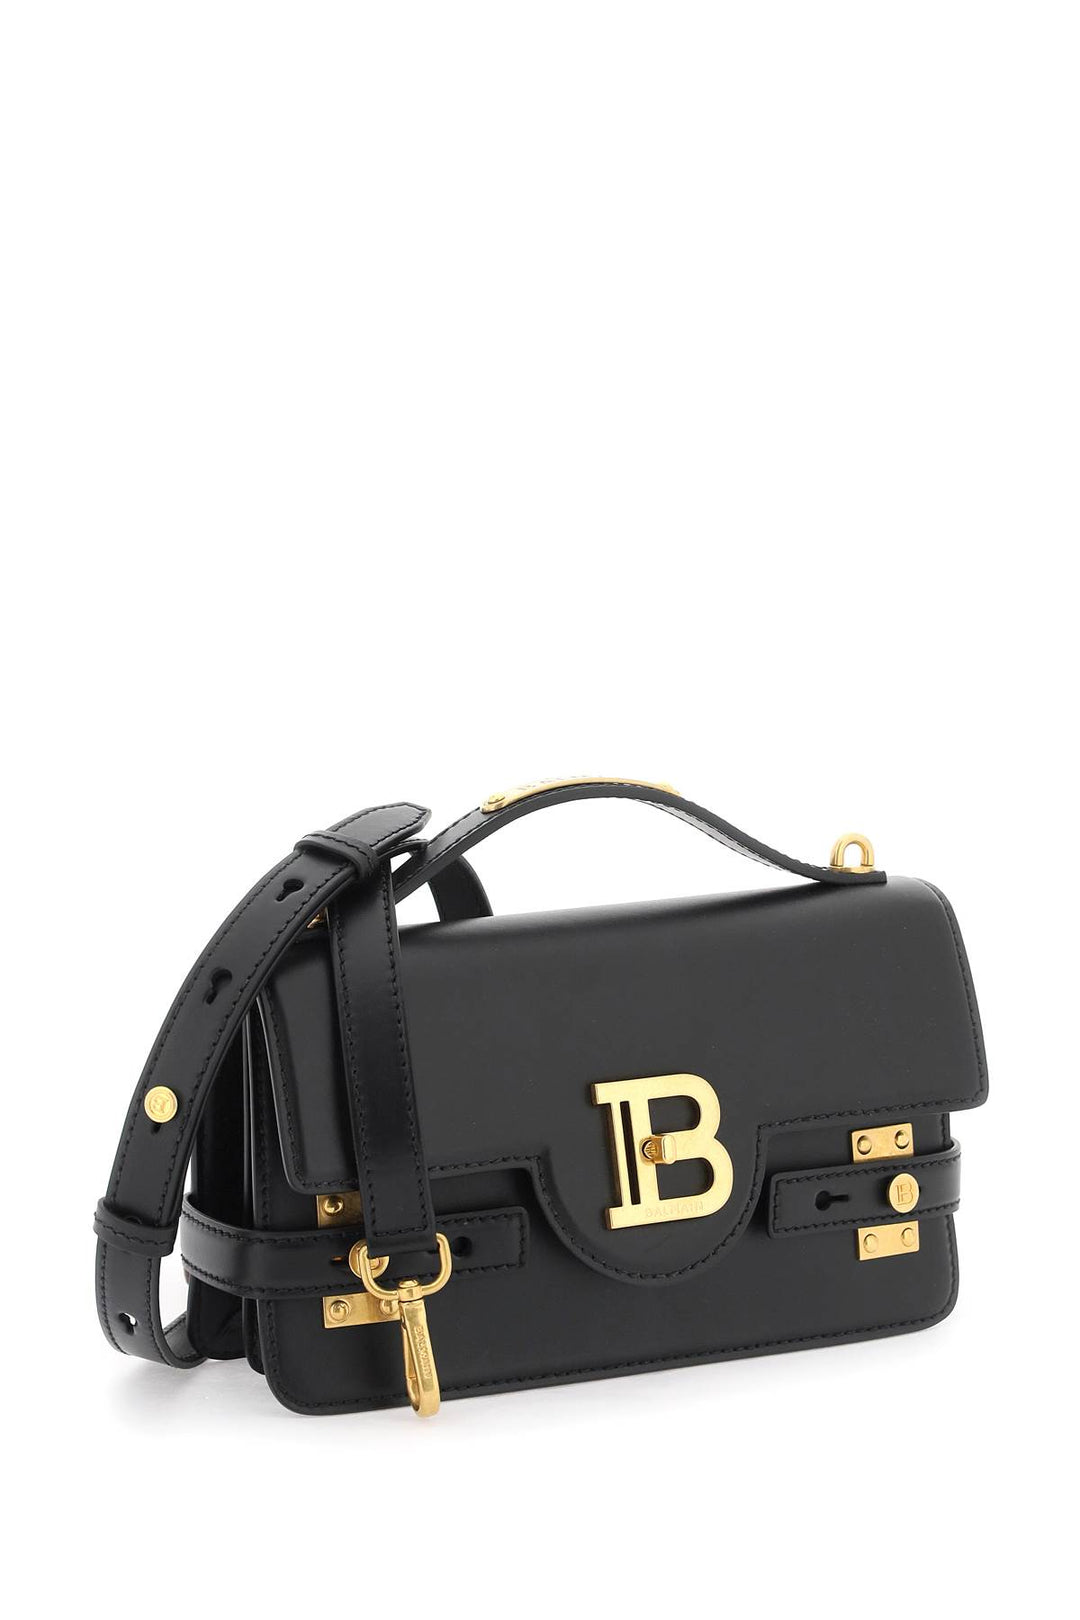 Balmain B Buzz 24 Handbag   Black